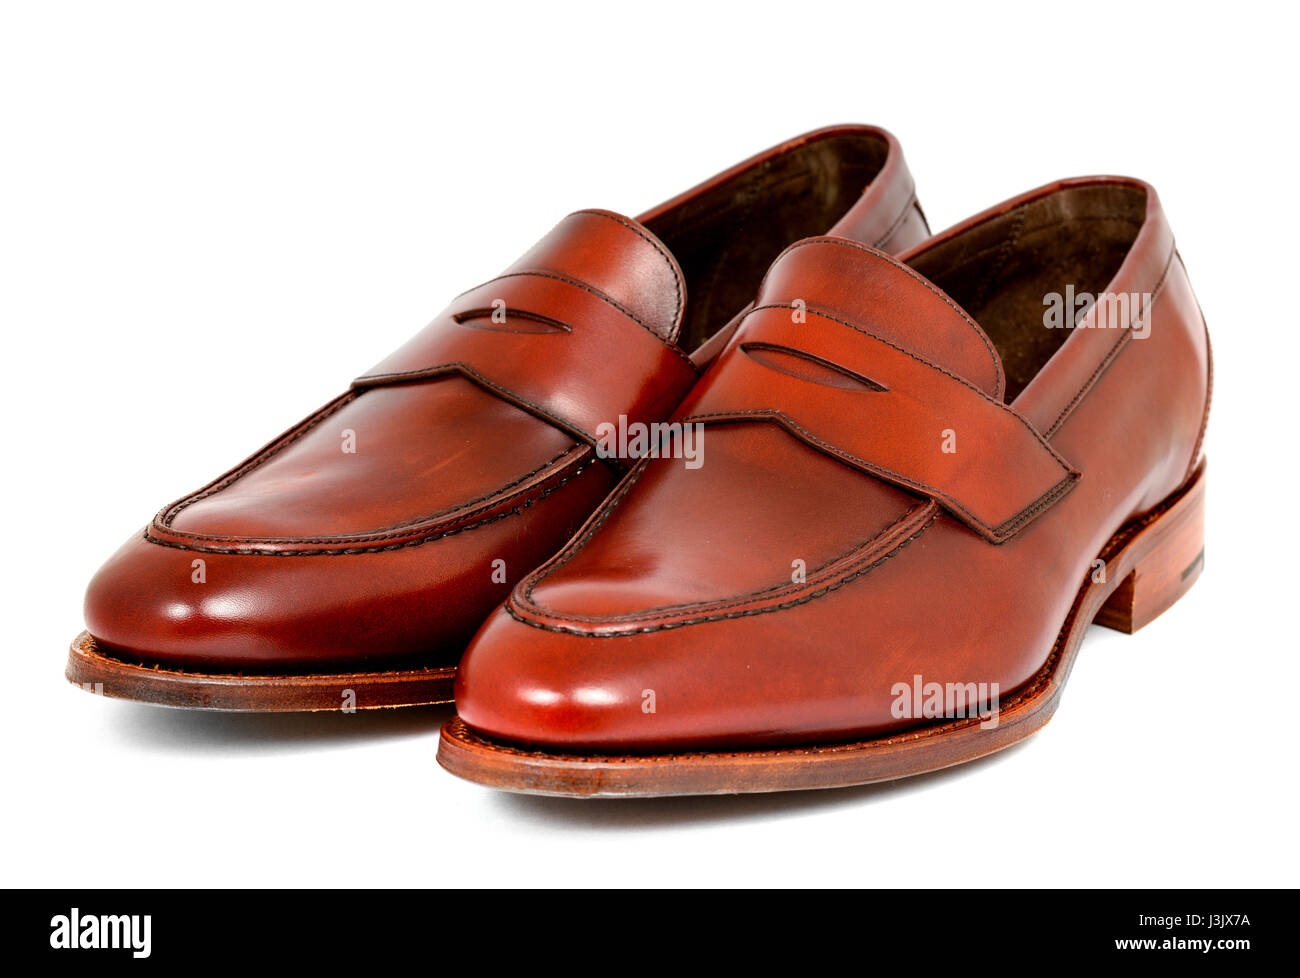 Paire de chaussures en cuir bourgogne penny loafer ensemble sur fond blanc. Diagonale horizontale de l'image à gauche Banque D'Images